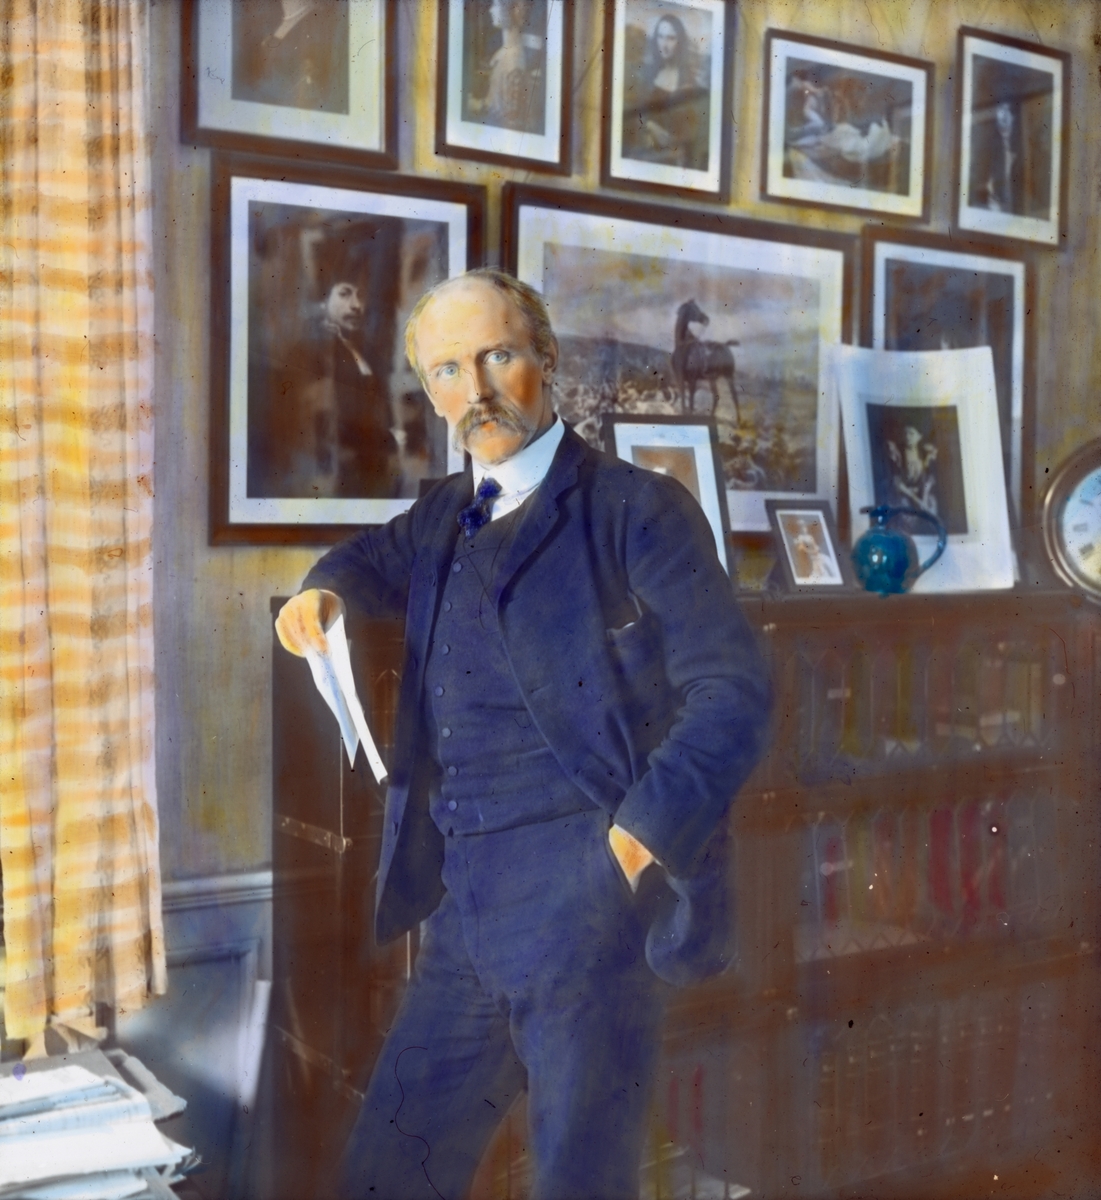 Håndkolorert dias. Portrett i helfigur av polarforskeren Fridtjof Nansen. Nansen lener seg mot en bokhylle og holder papirer i hånden. På veggen bak ham henger innrammede portretter.